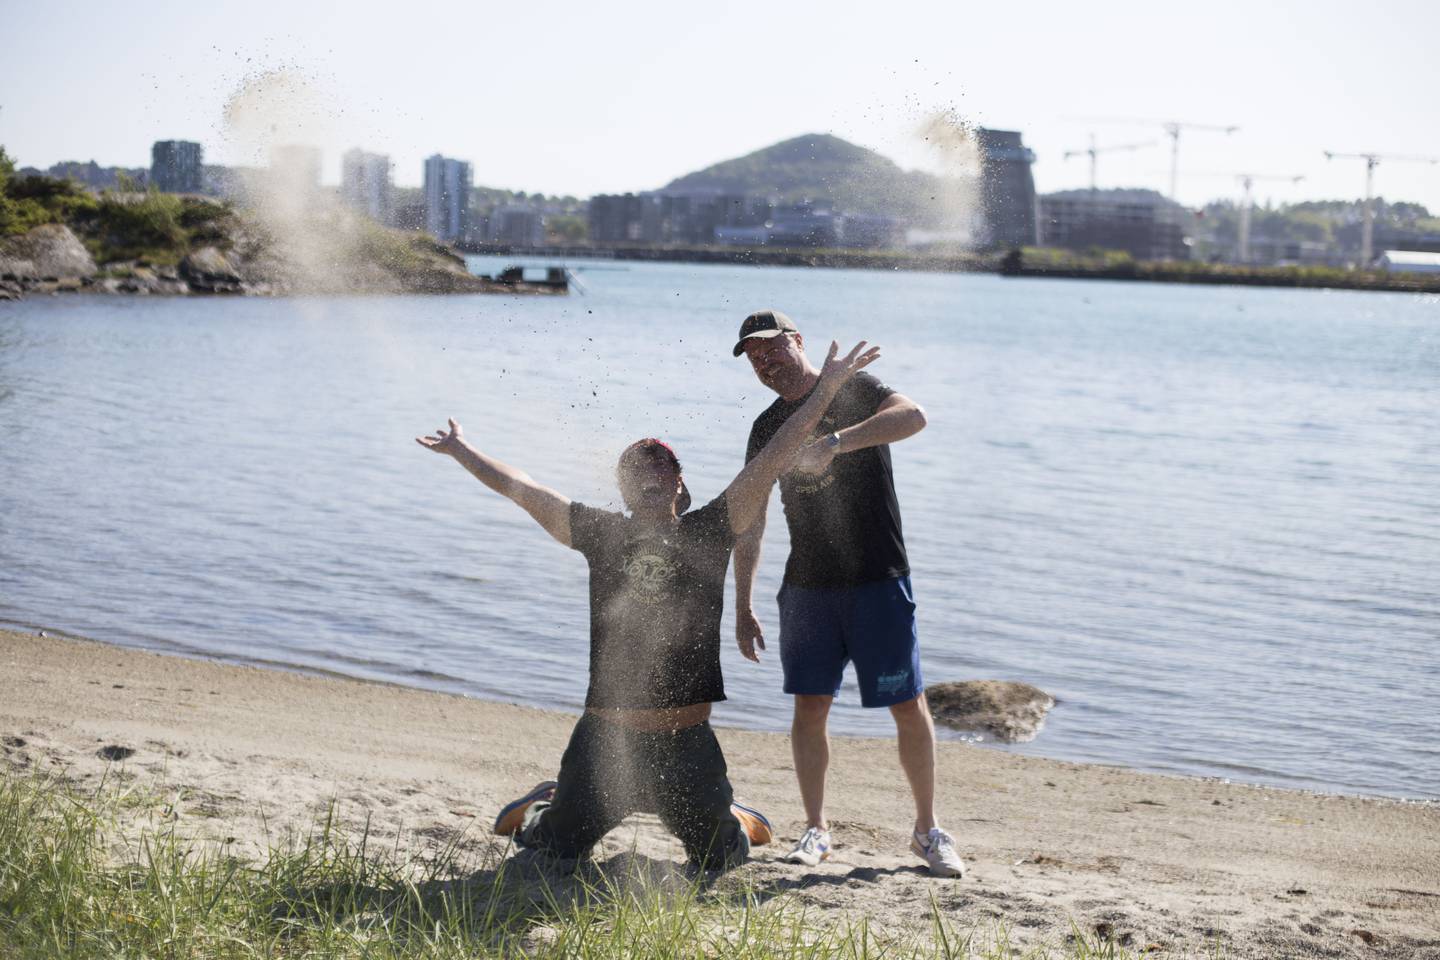 Øyvind Ekeland kaster sand i luften for å vise hvor glad han er, på eget initiativ. Børge Moi Nilsen er også glad, altså.